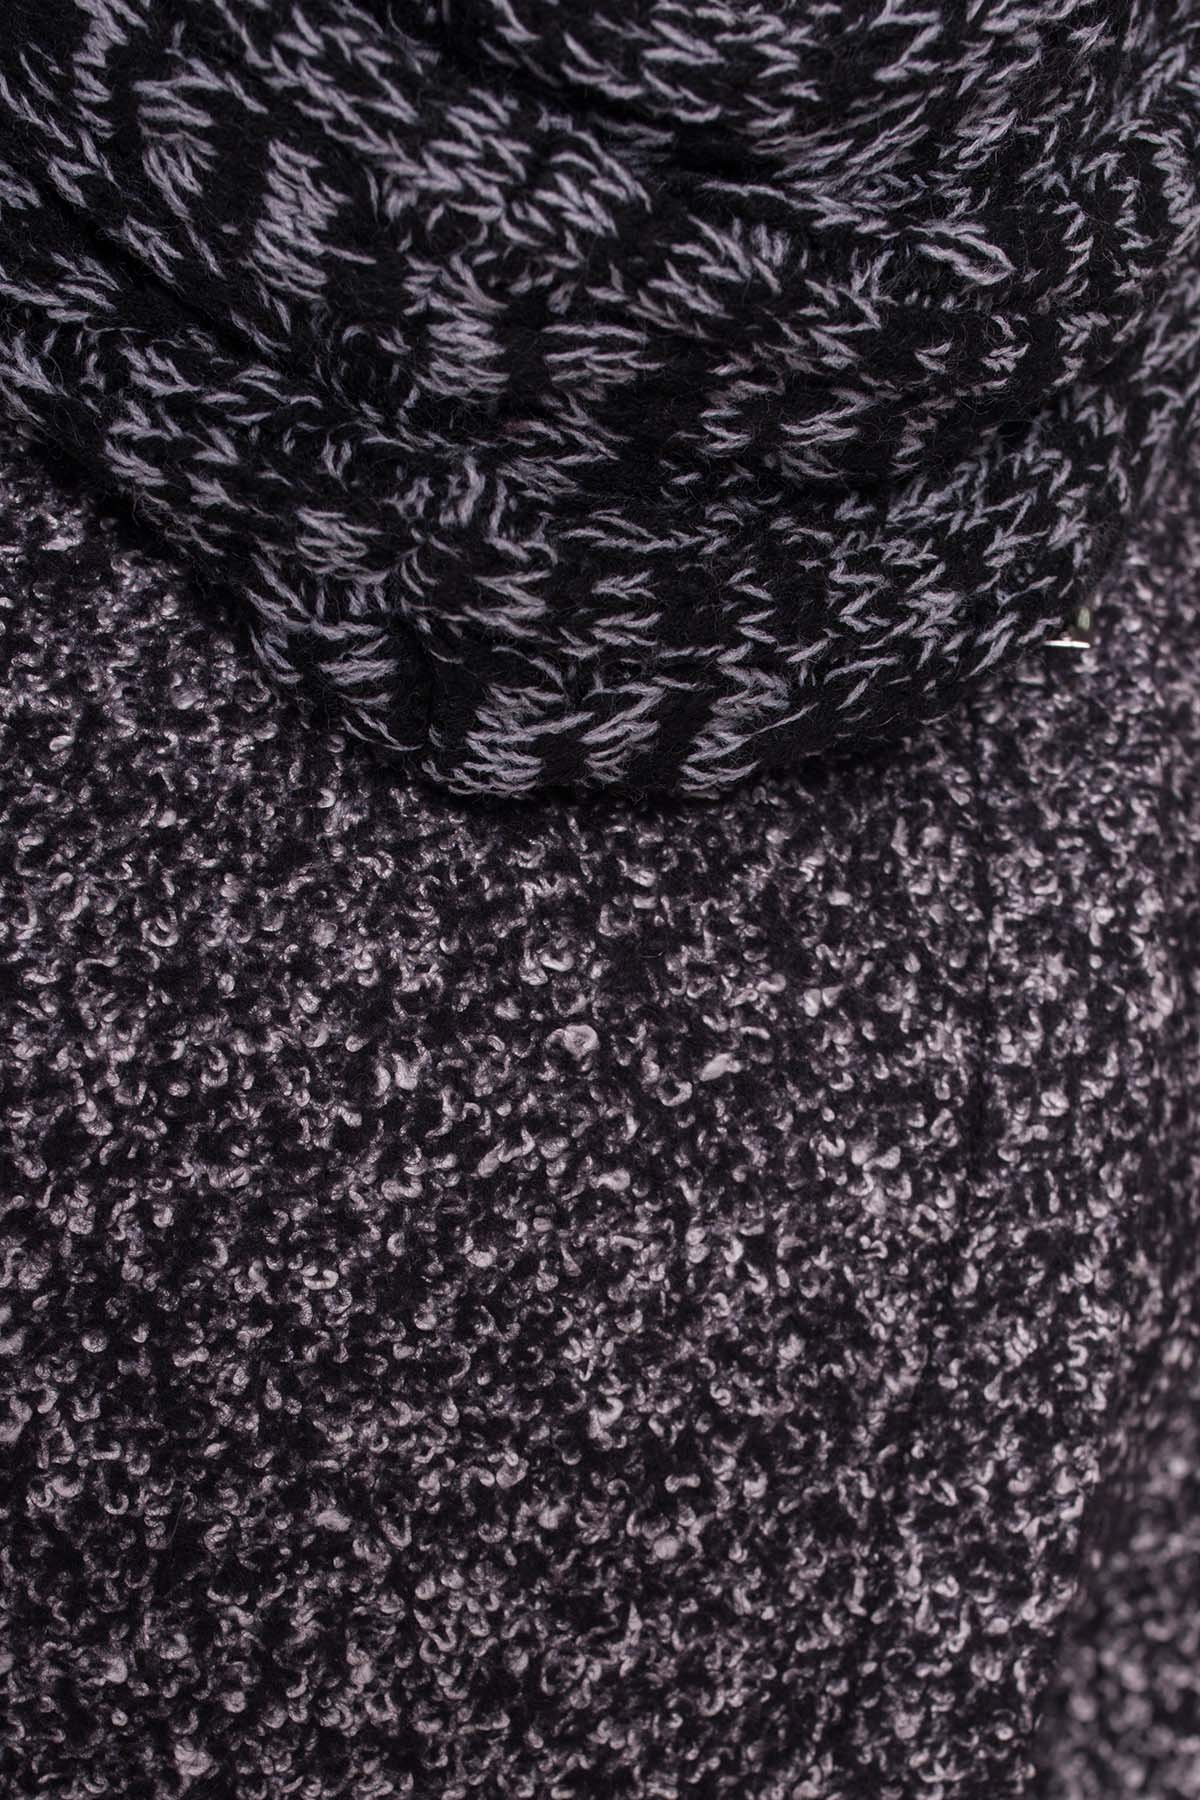 Пальто зима Эльпассо 3681 АРТ. 19191 Цвет: Черный/серый - фото 6, интернет магазин tm-modus.ru